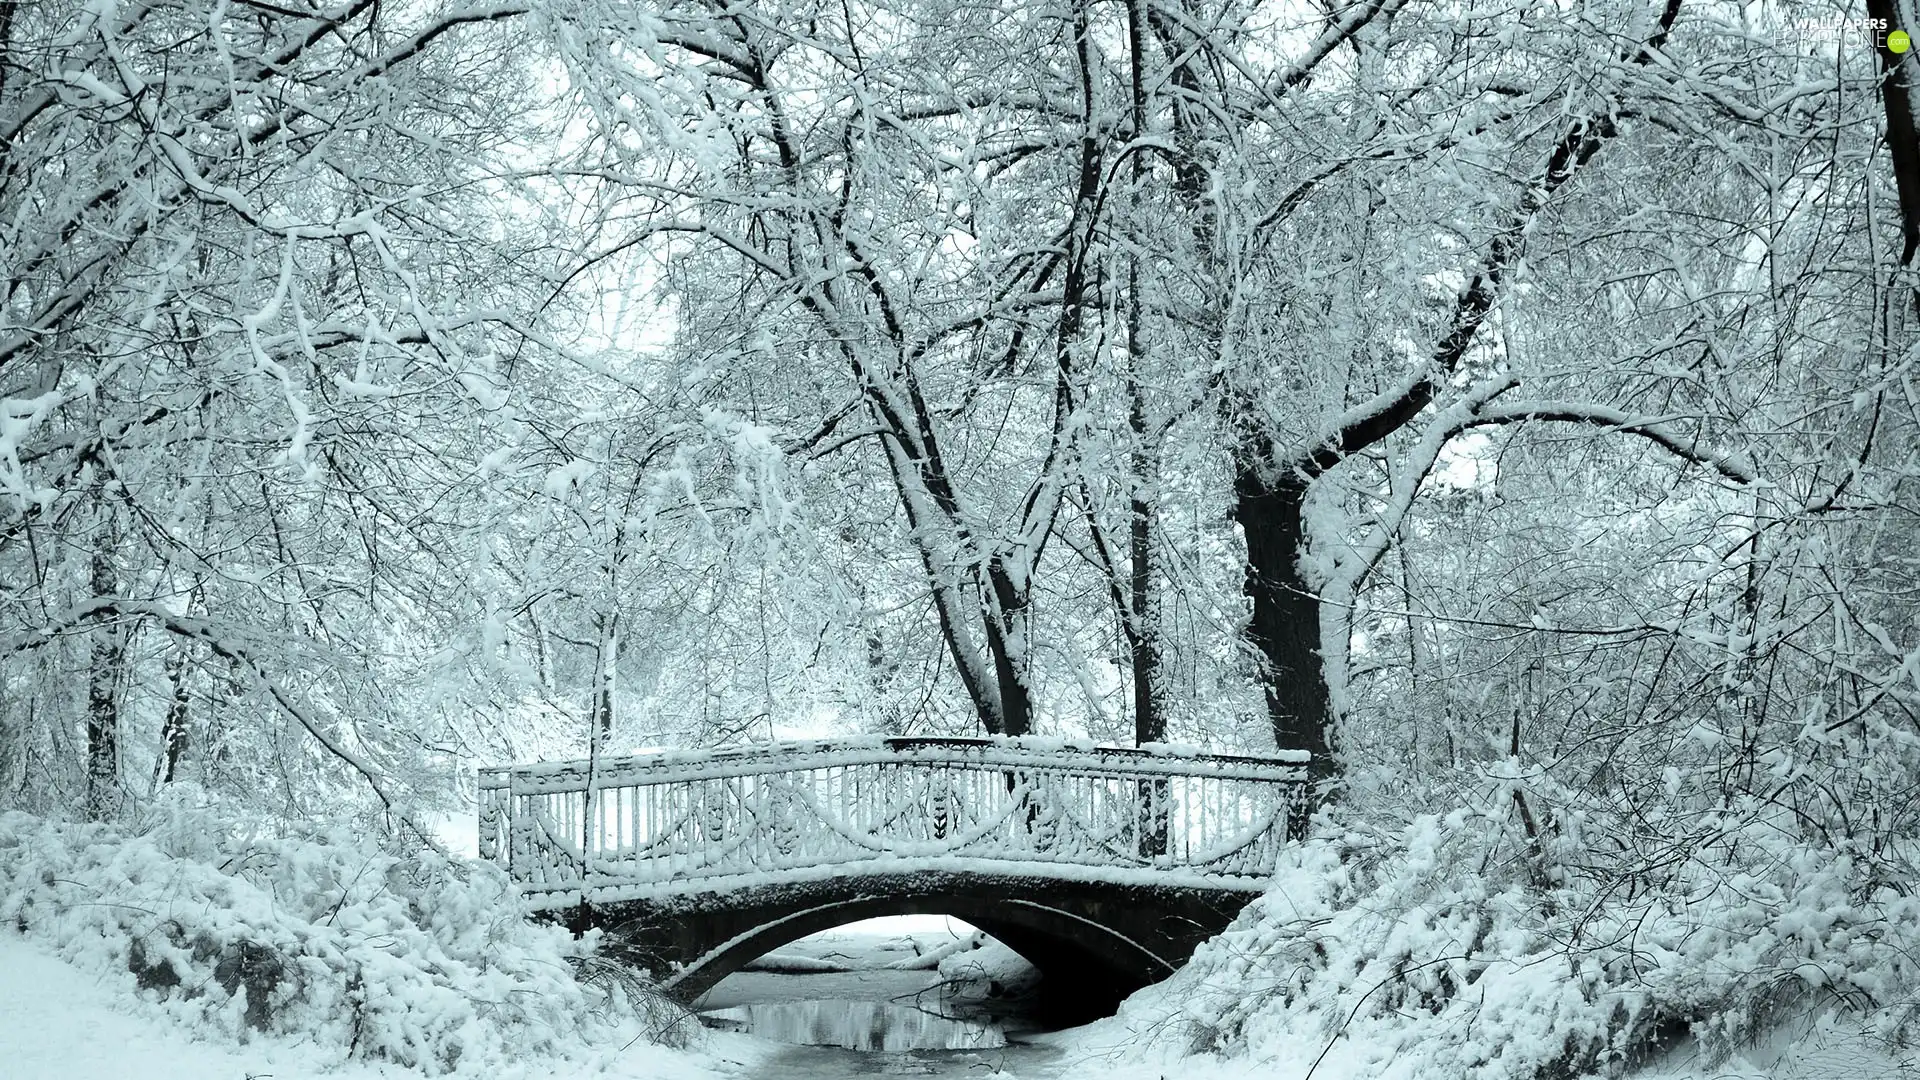 River, Park, winter, bridges